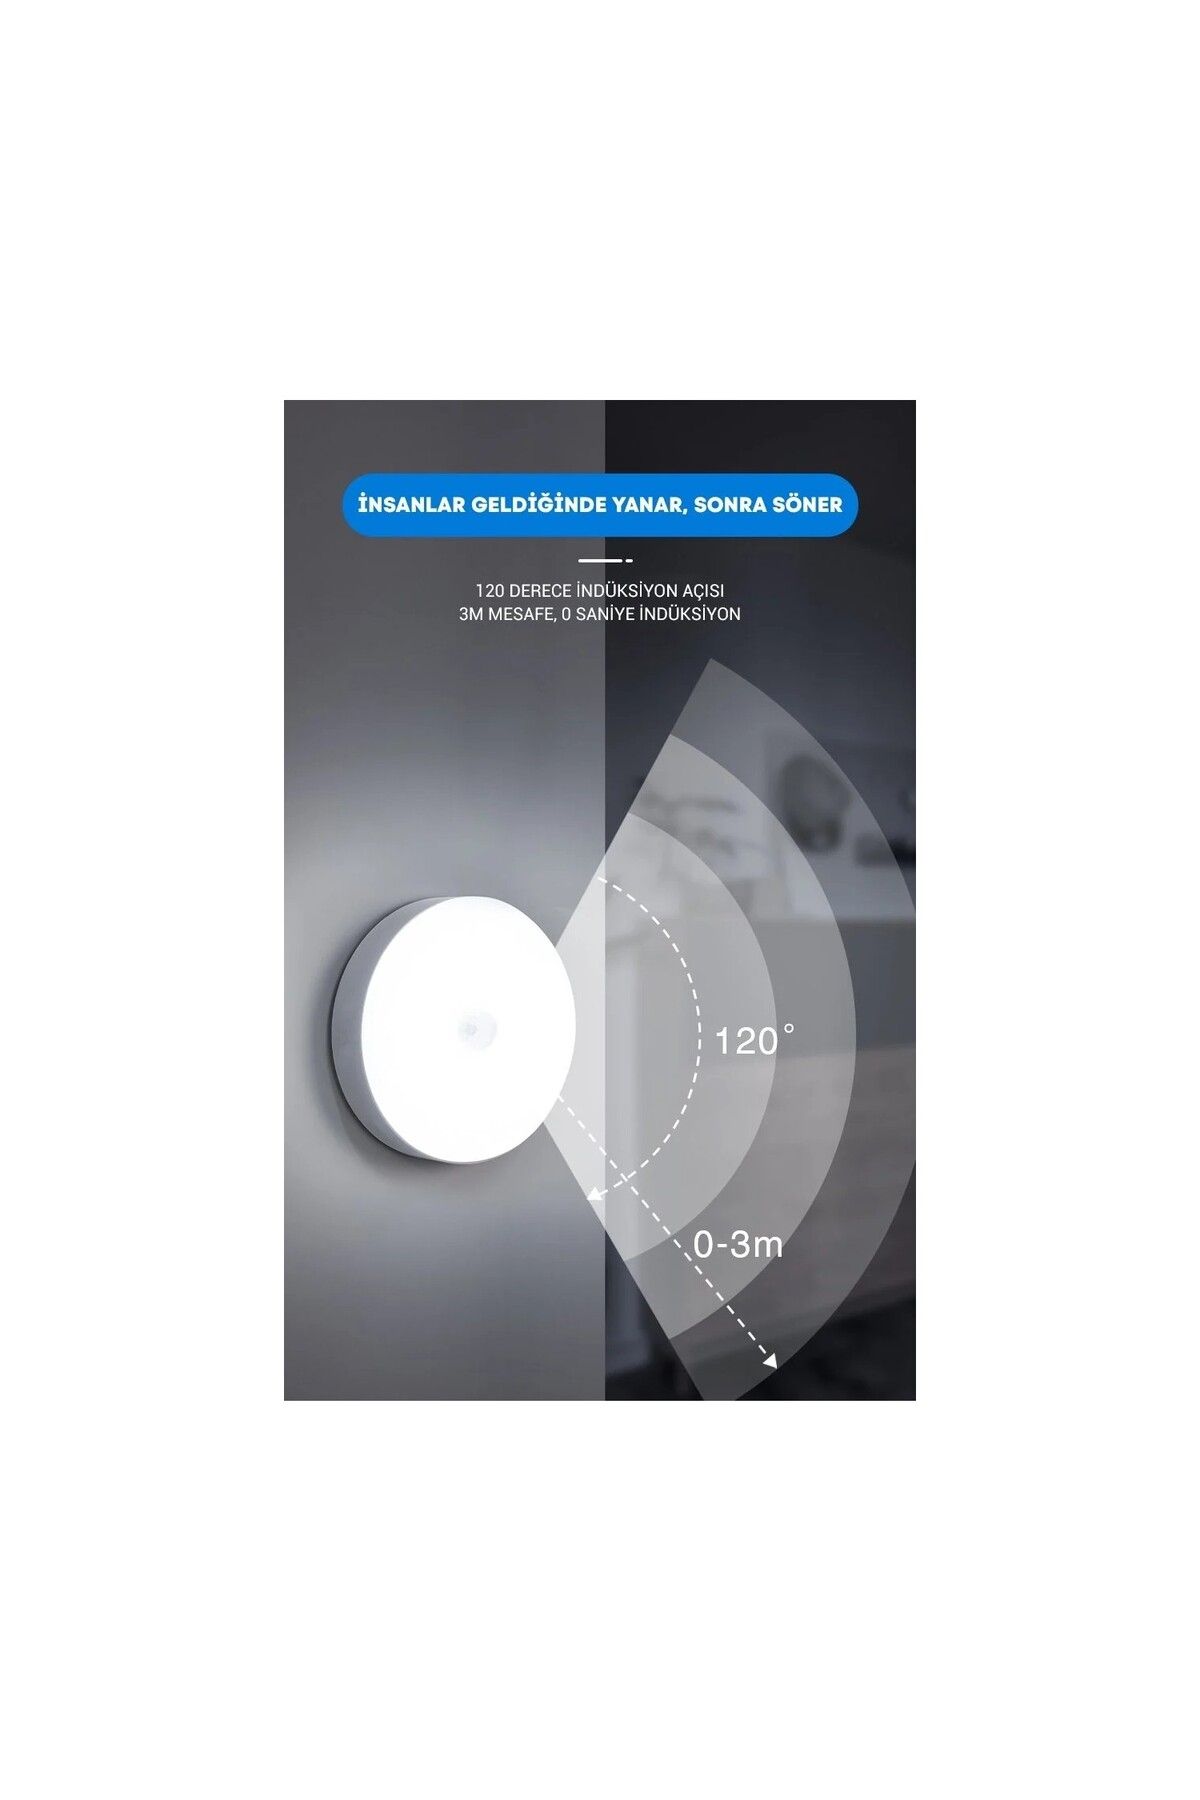 AmberLED Hareket Sensörlü Ledli Gece Lambası, Şarj Edilebilir, Taşınabilir, 6000K Beyaz, Dolap içi Lamba